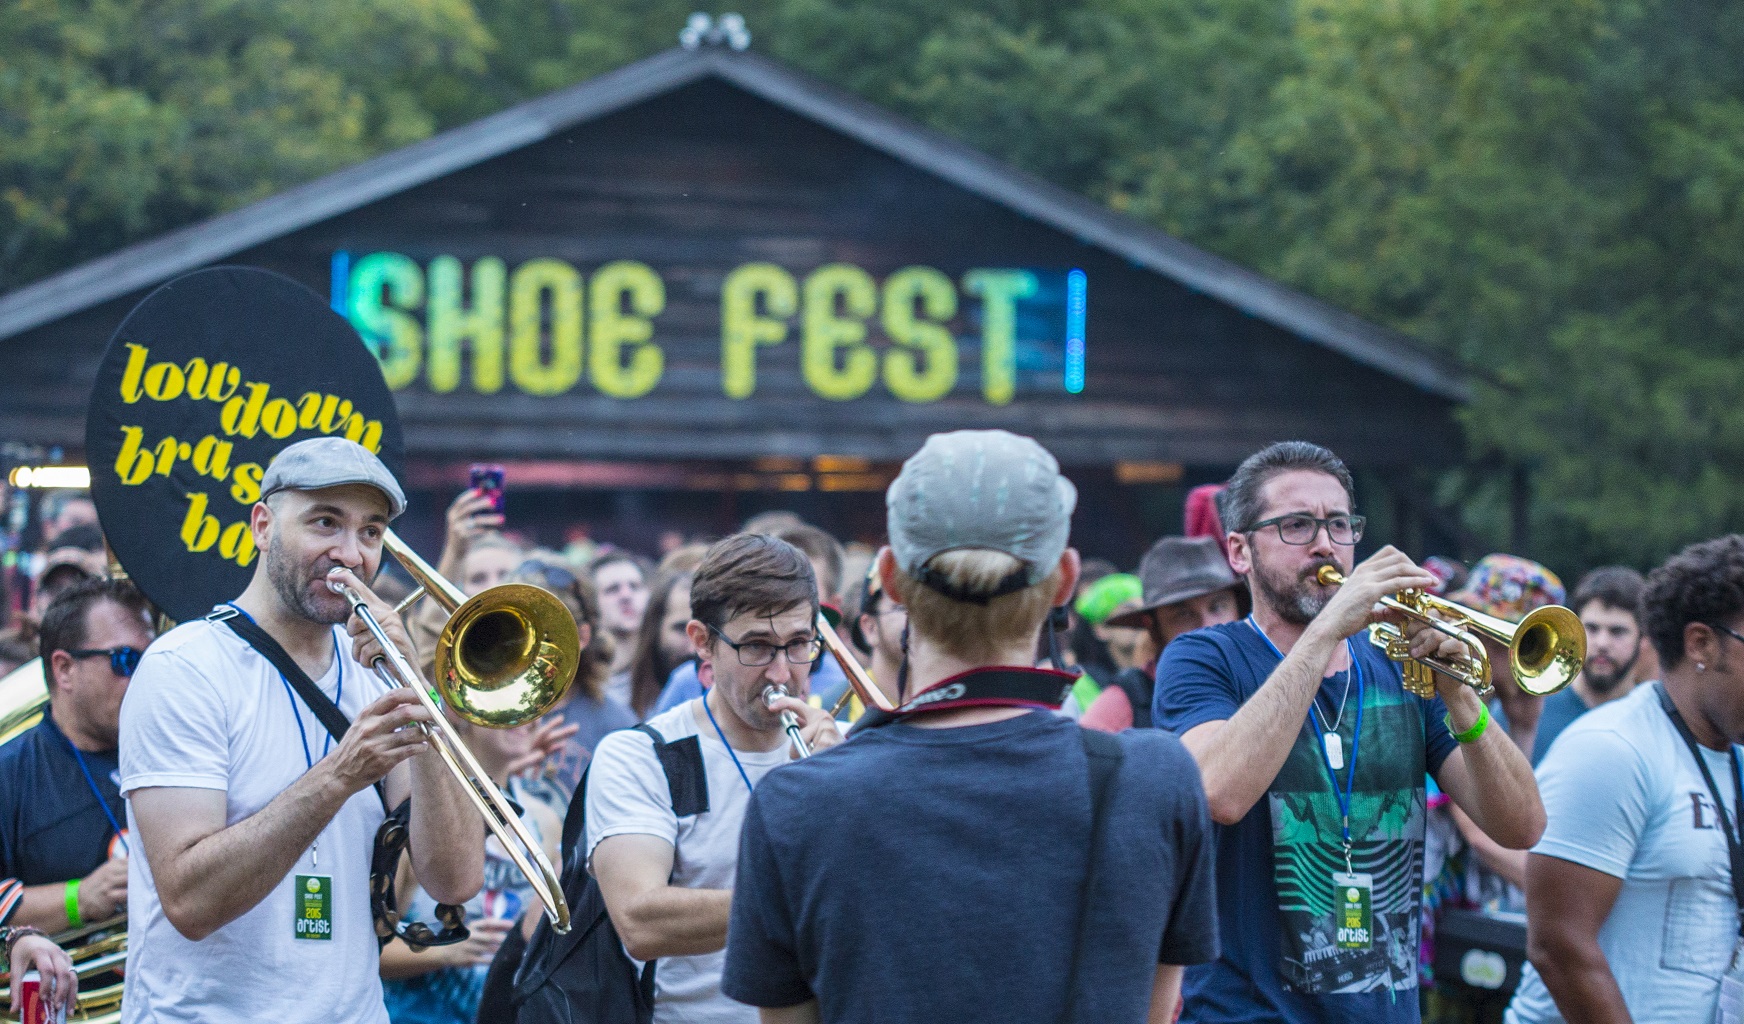 Shoe Fest 2018